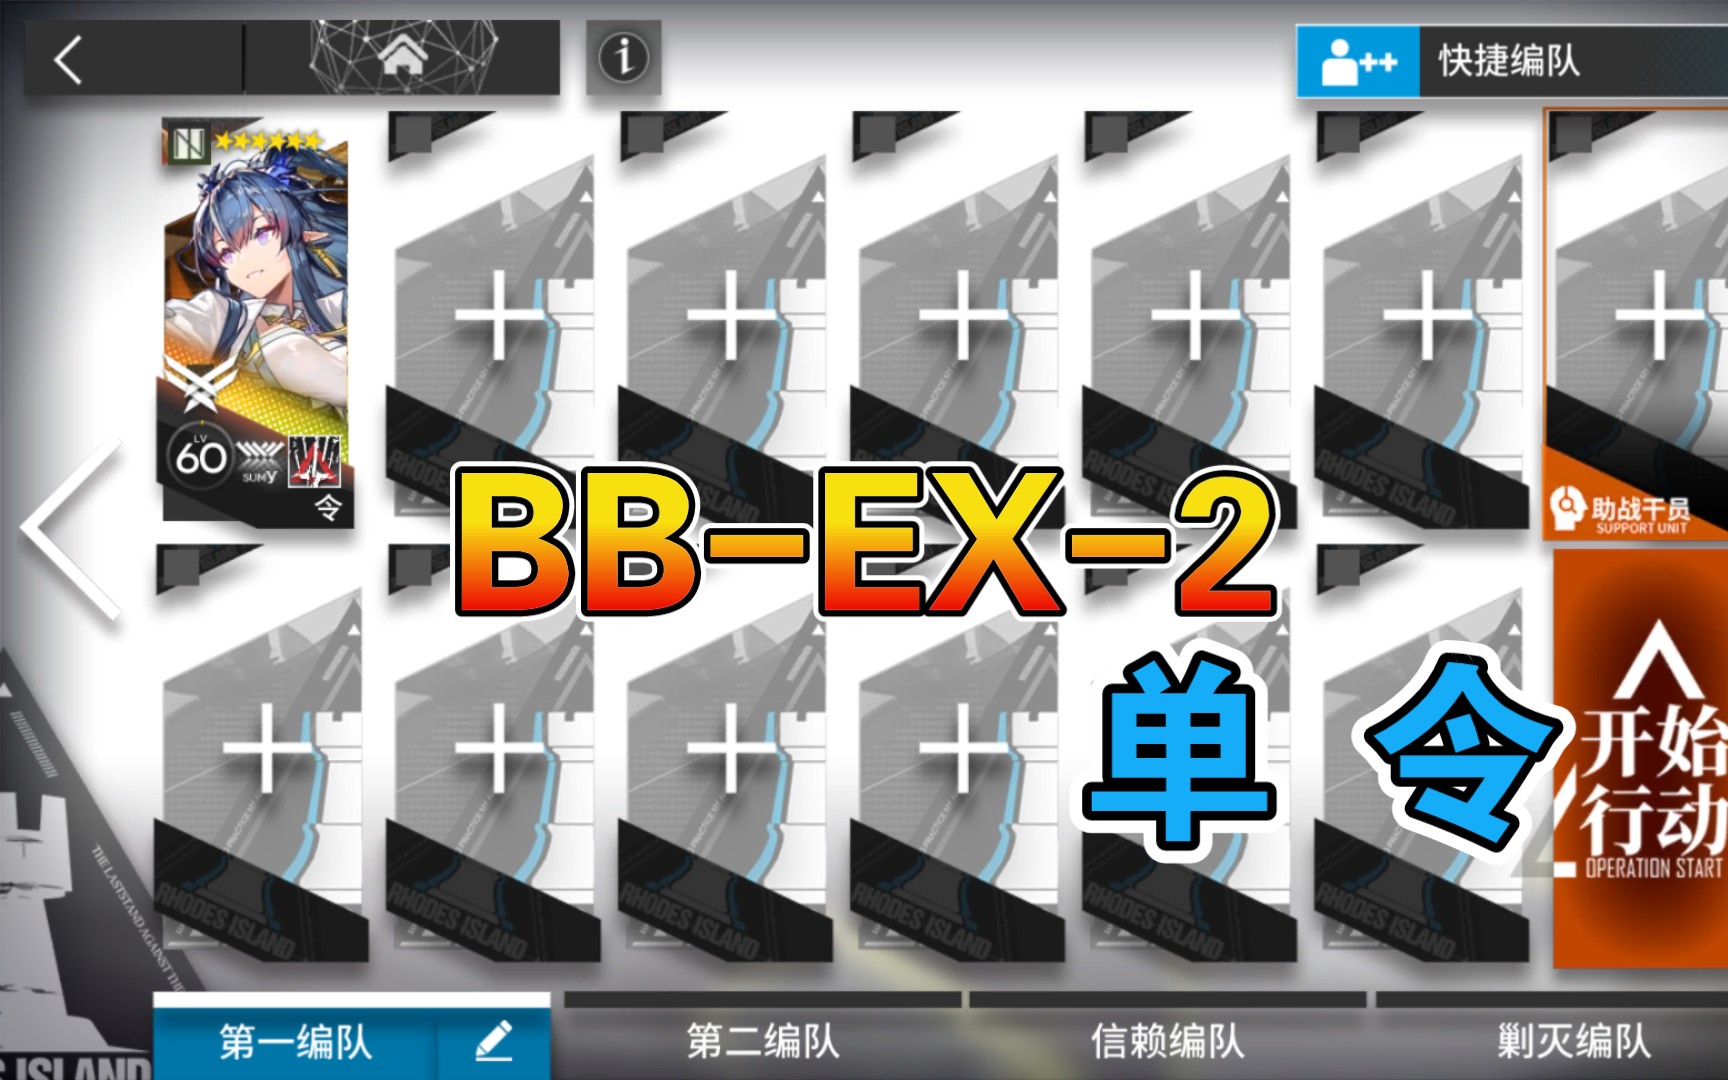 【明日方舟】 BB-EX-2 低配 令单人 巴别塔